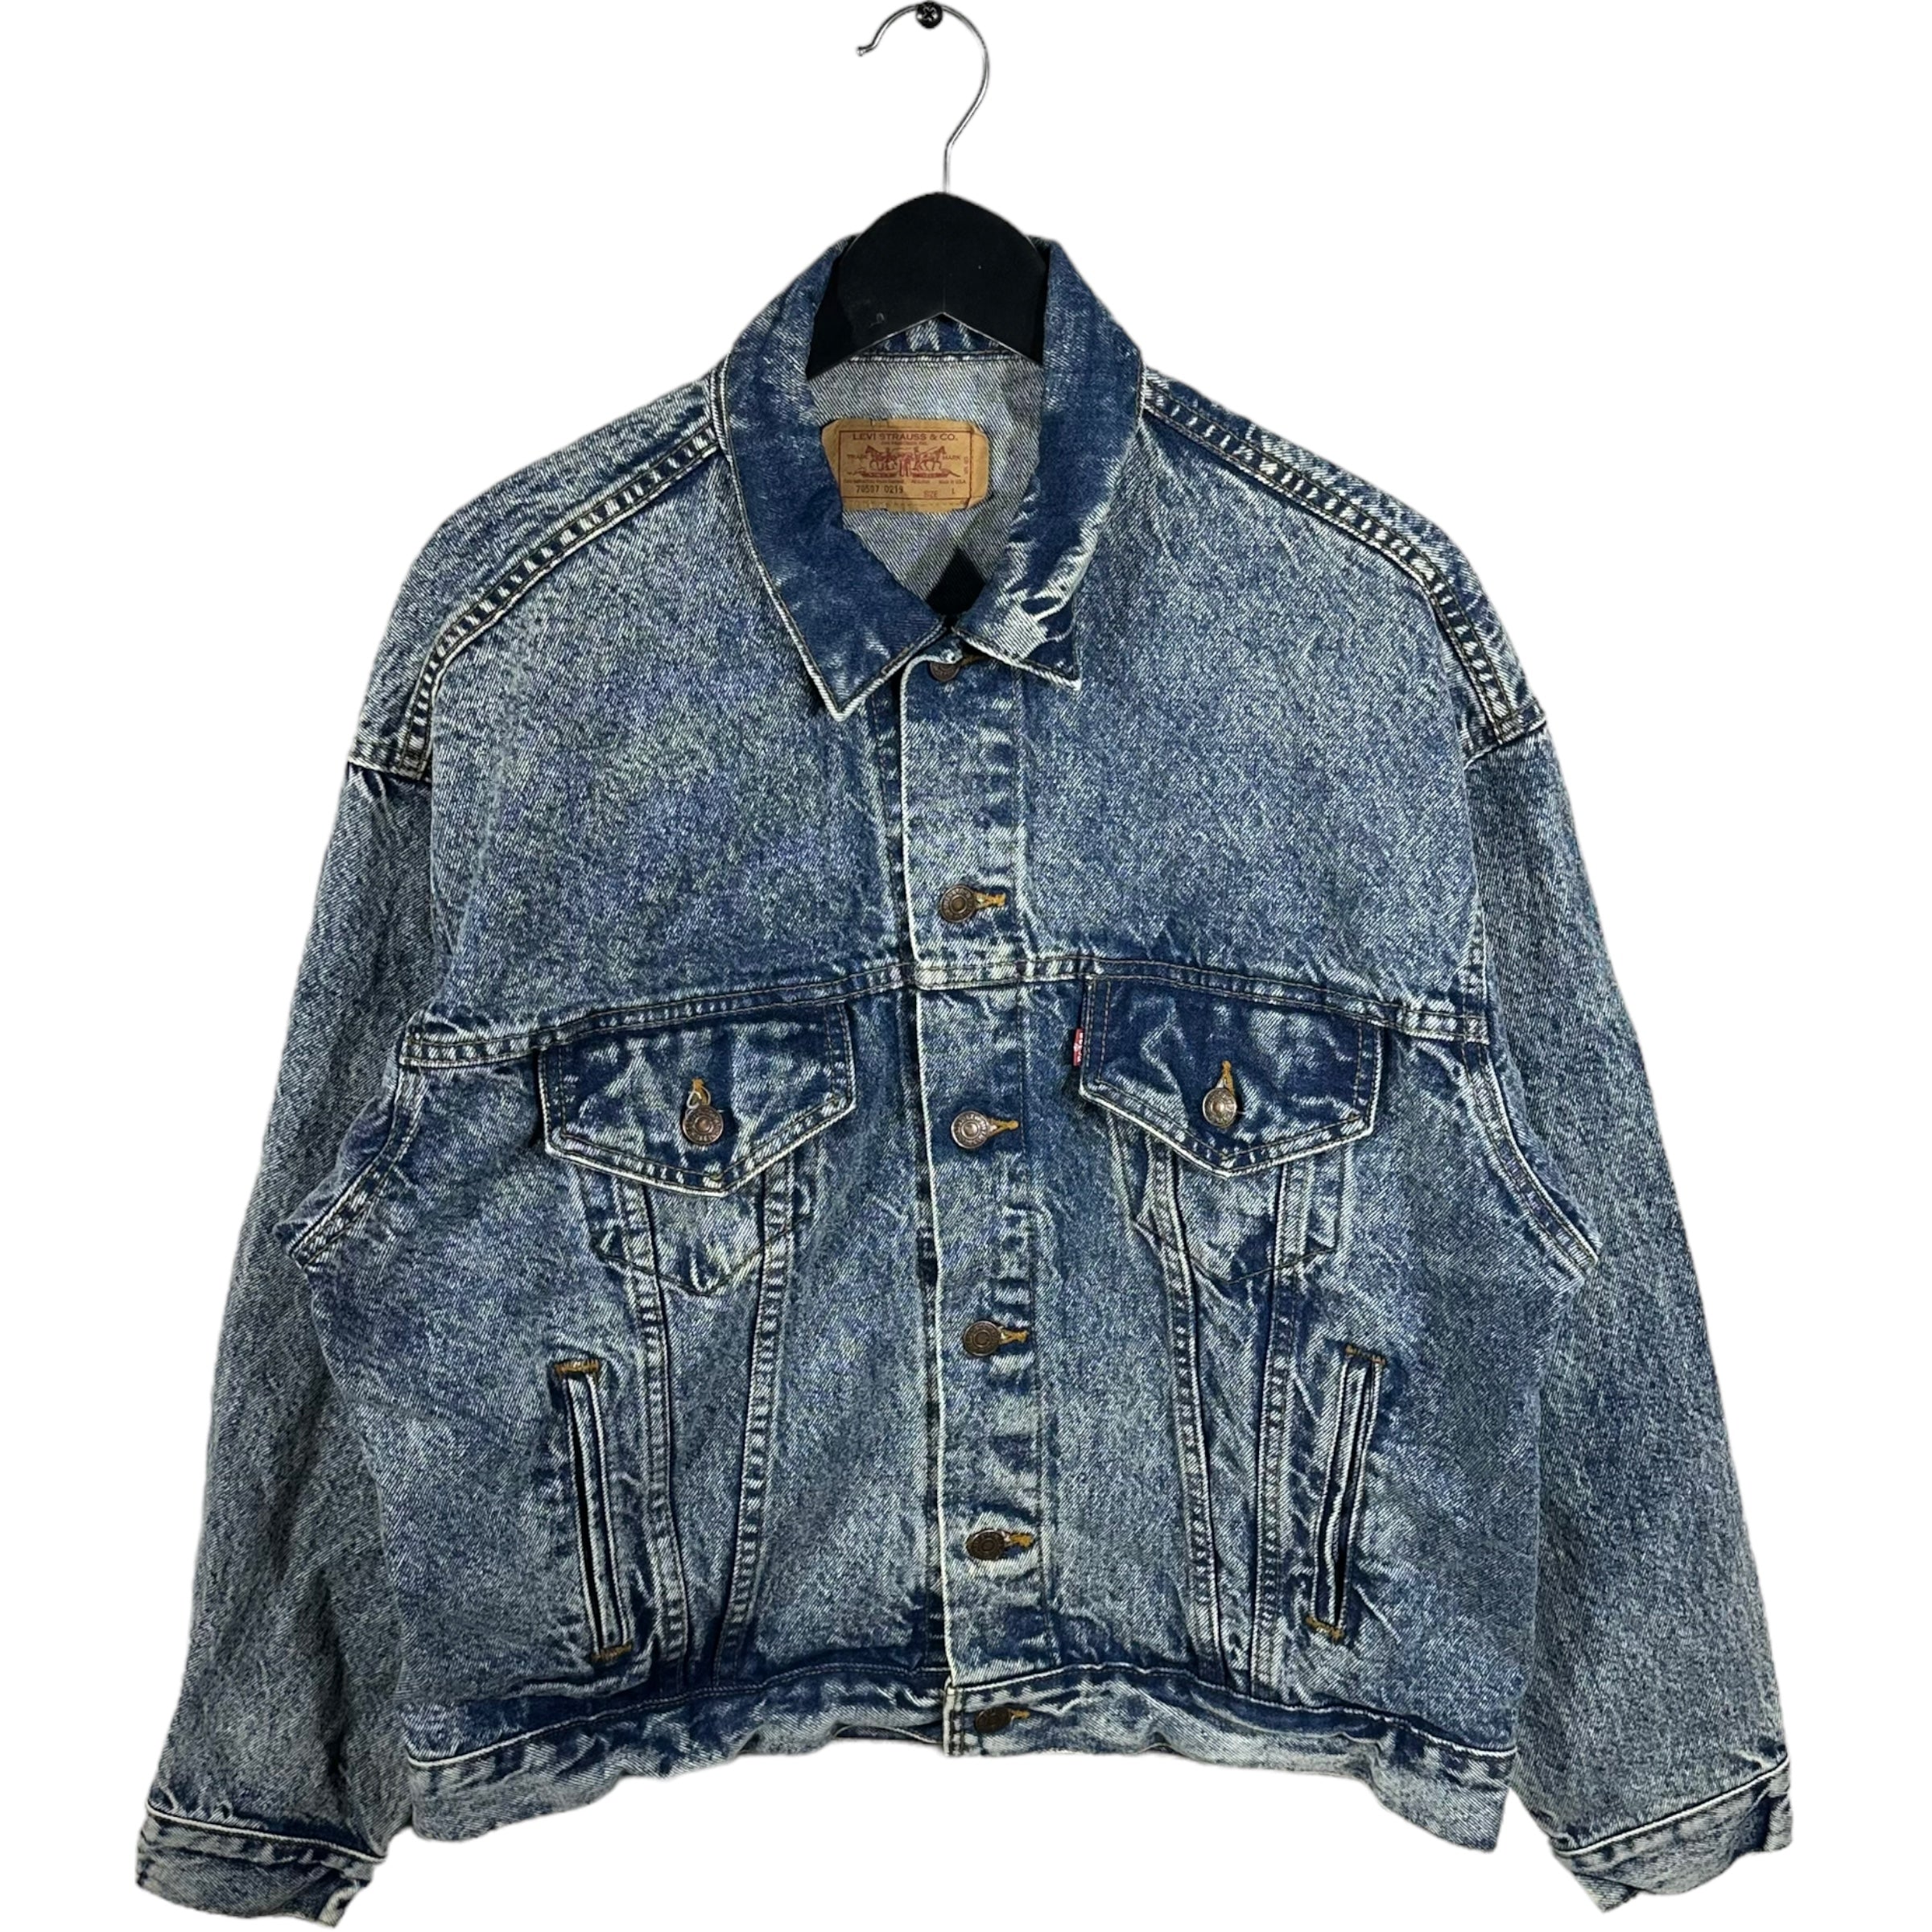 Vintage Levis Acid Wash Denim Jacket